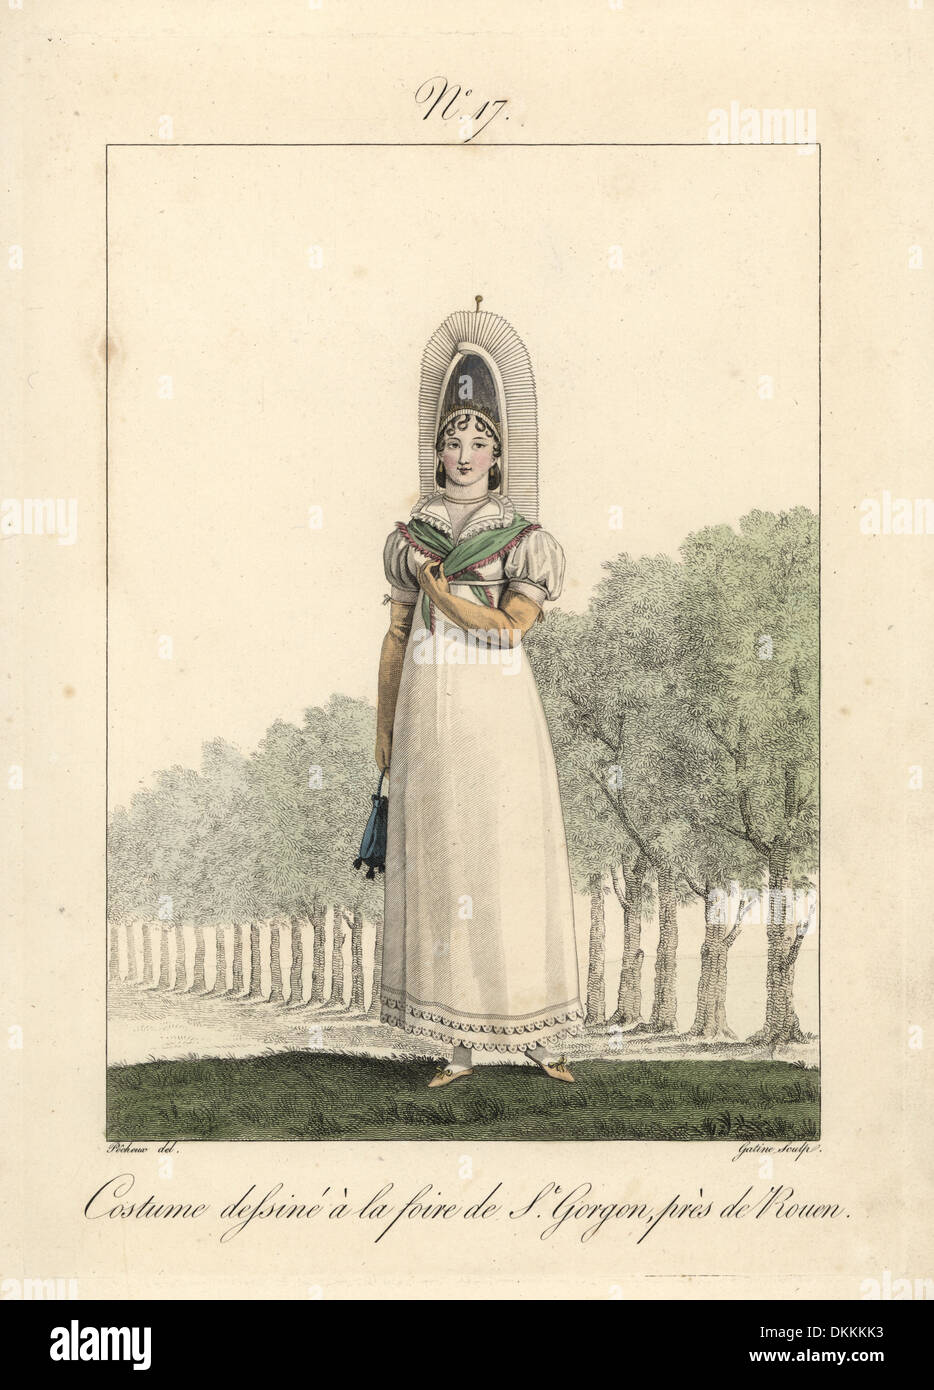 Costume d'une femme à la foire de Saint Gorgon, près de Rouen. Banque D'Images